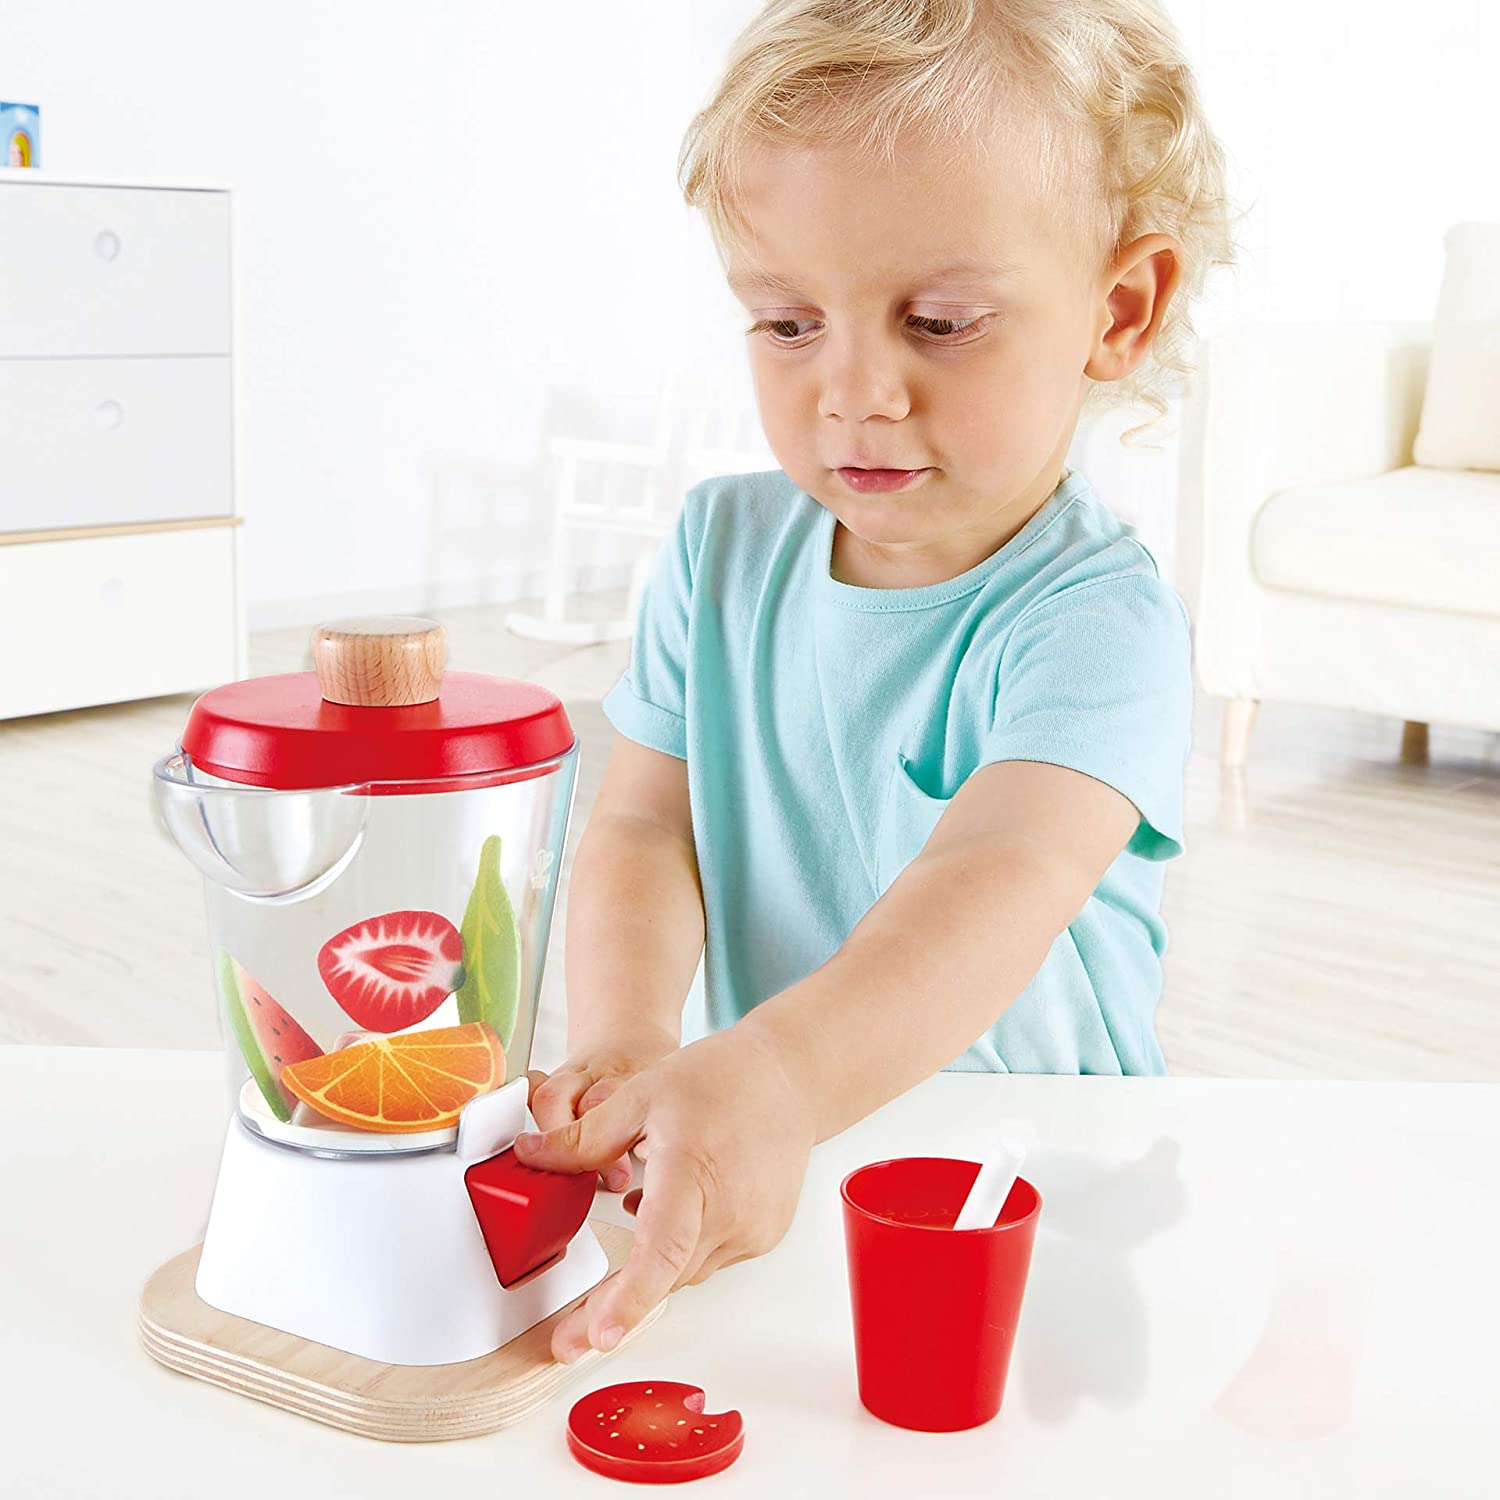 Kids' Vegetable & Fruit Smoothie Blender Play Set, Wooden Juice